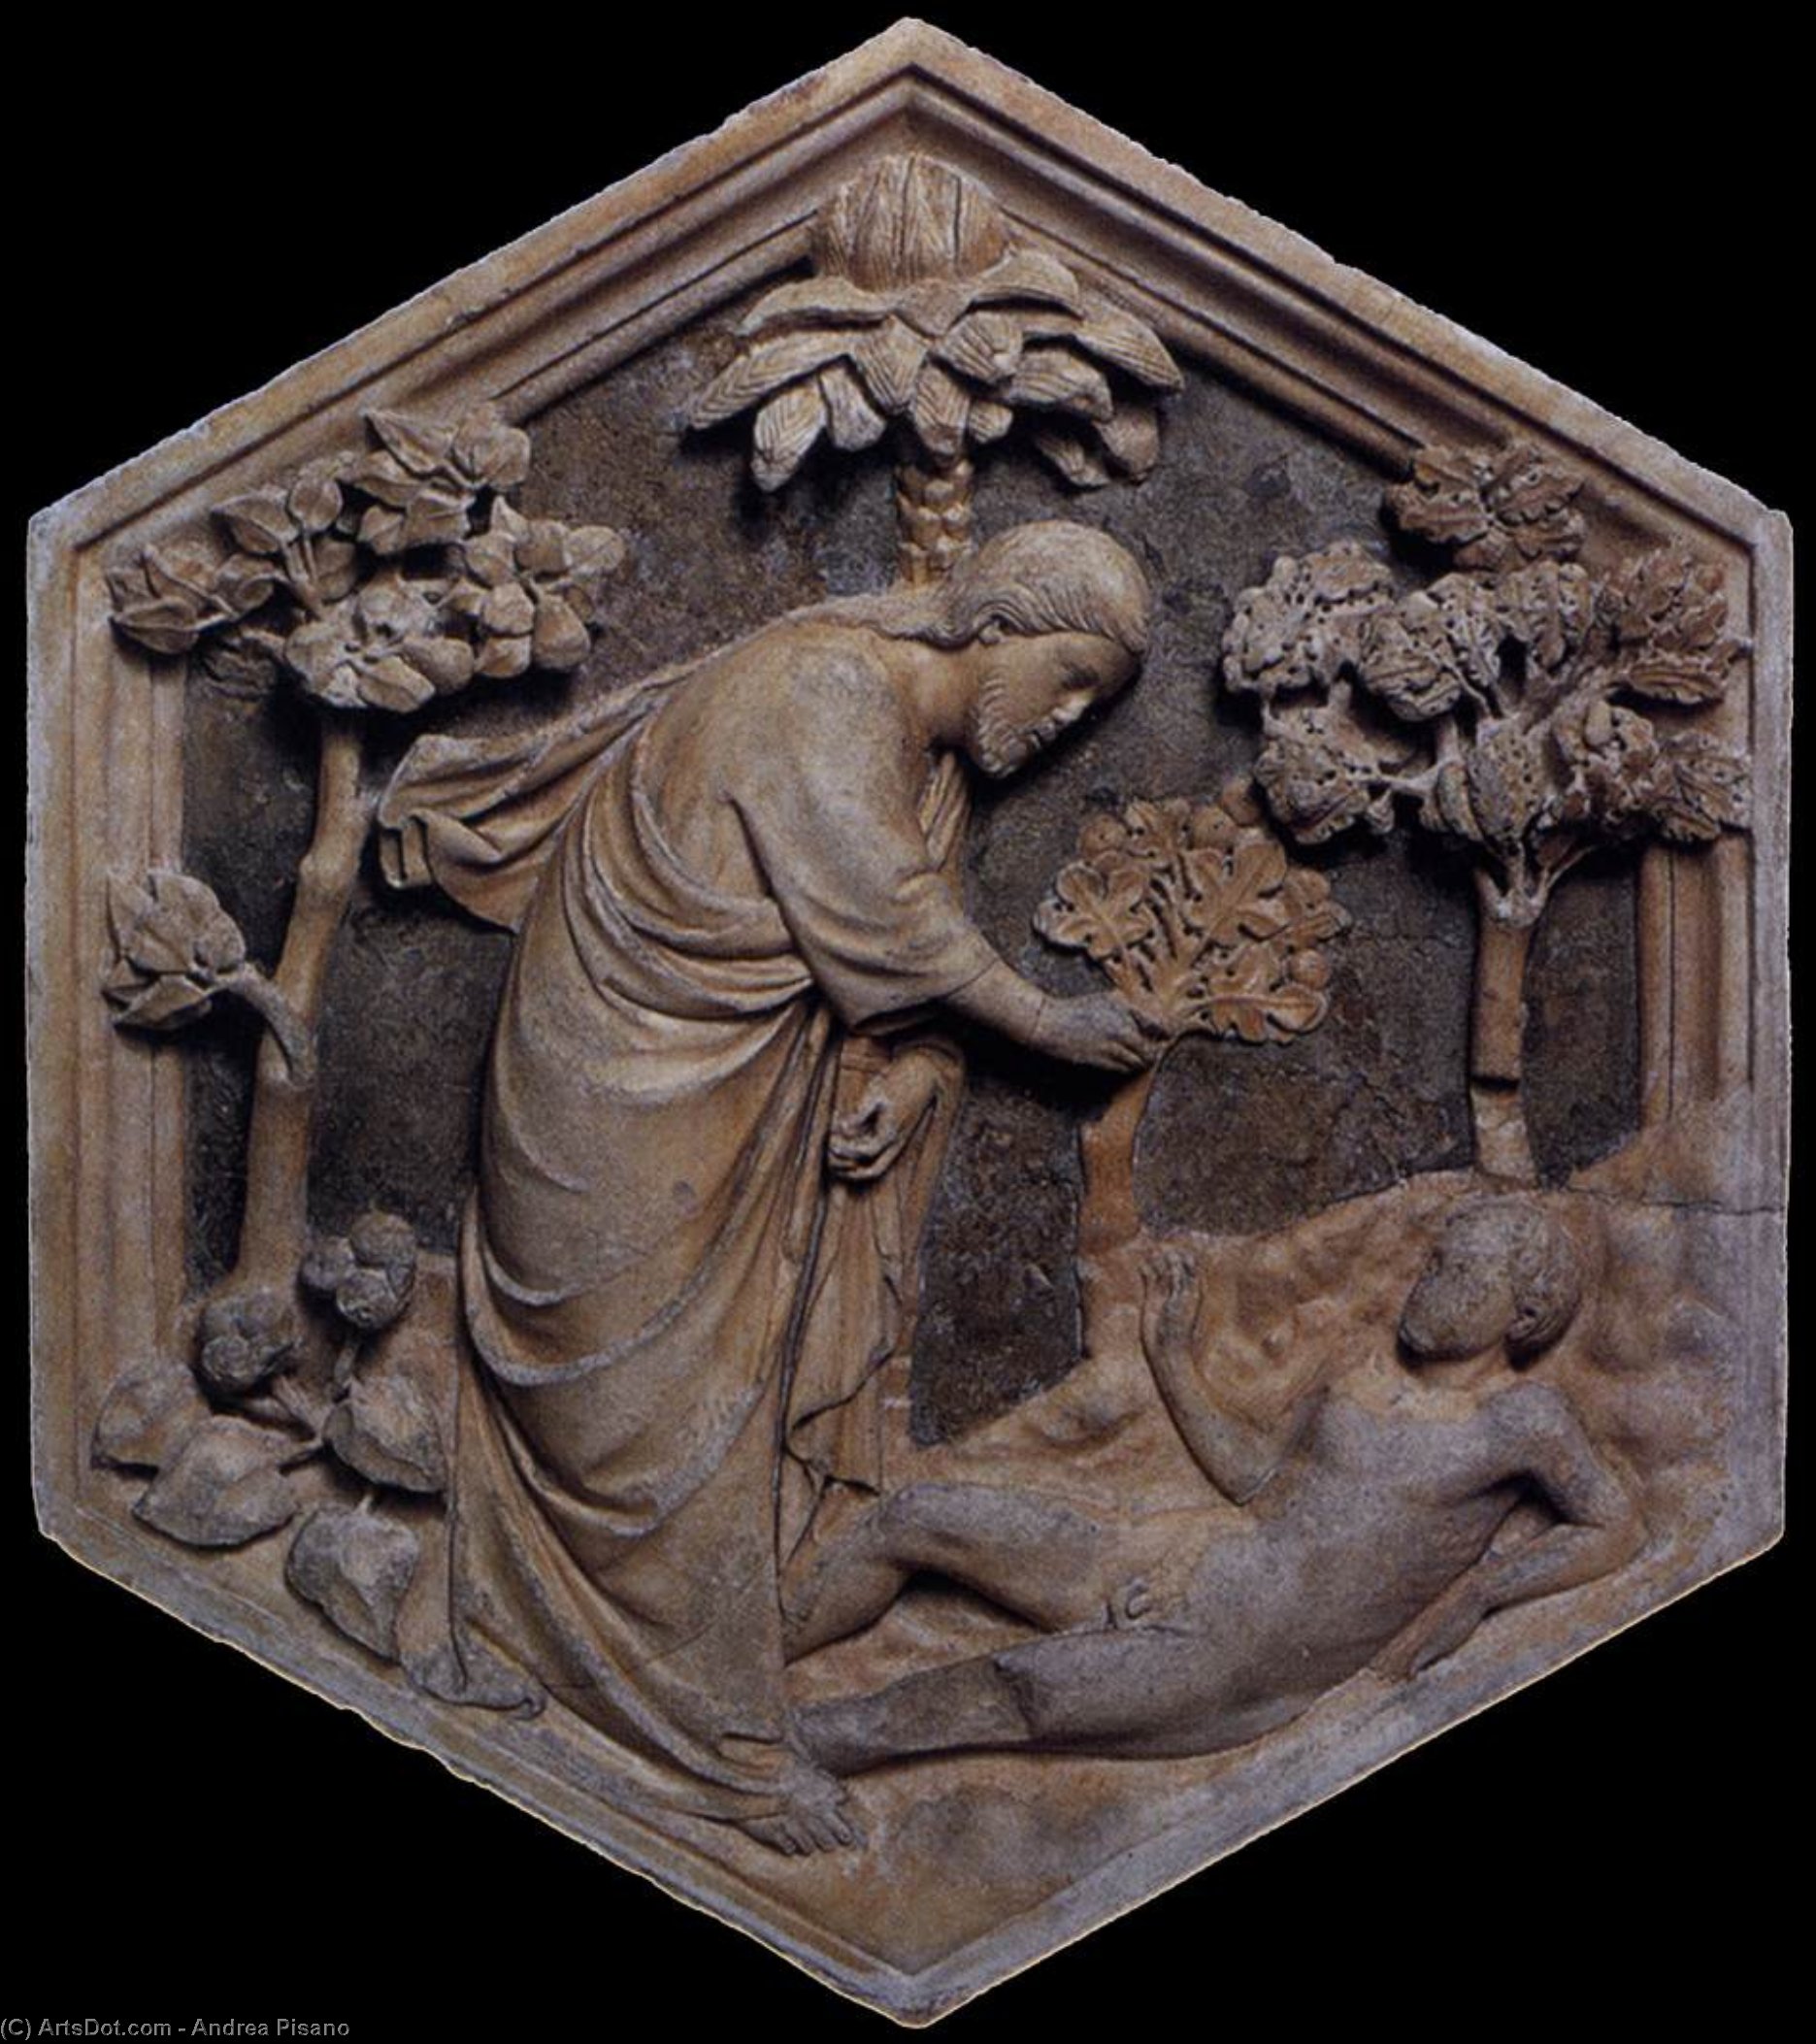 WikiOO.org - Encyclopedia of Fine Arts - Schilderen, Artwork Andrea Pisano - The Creation of Adam